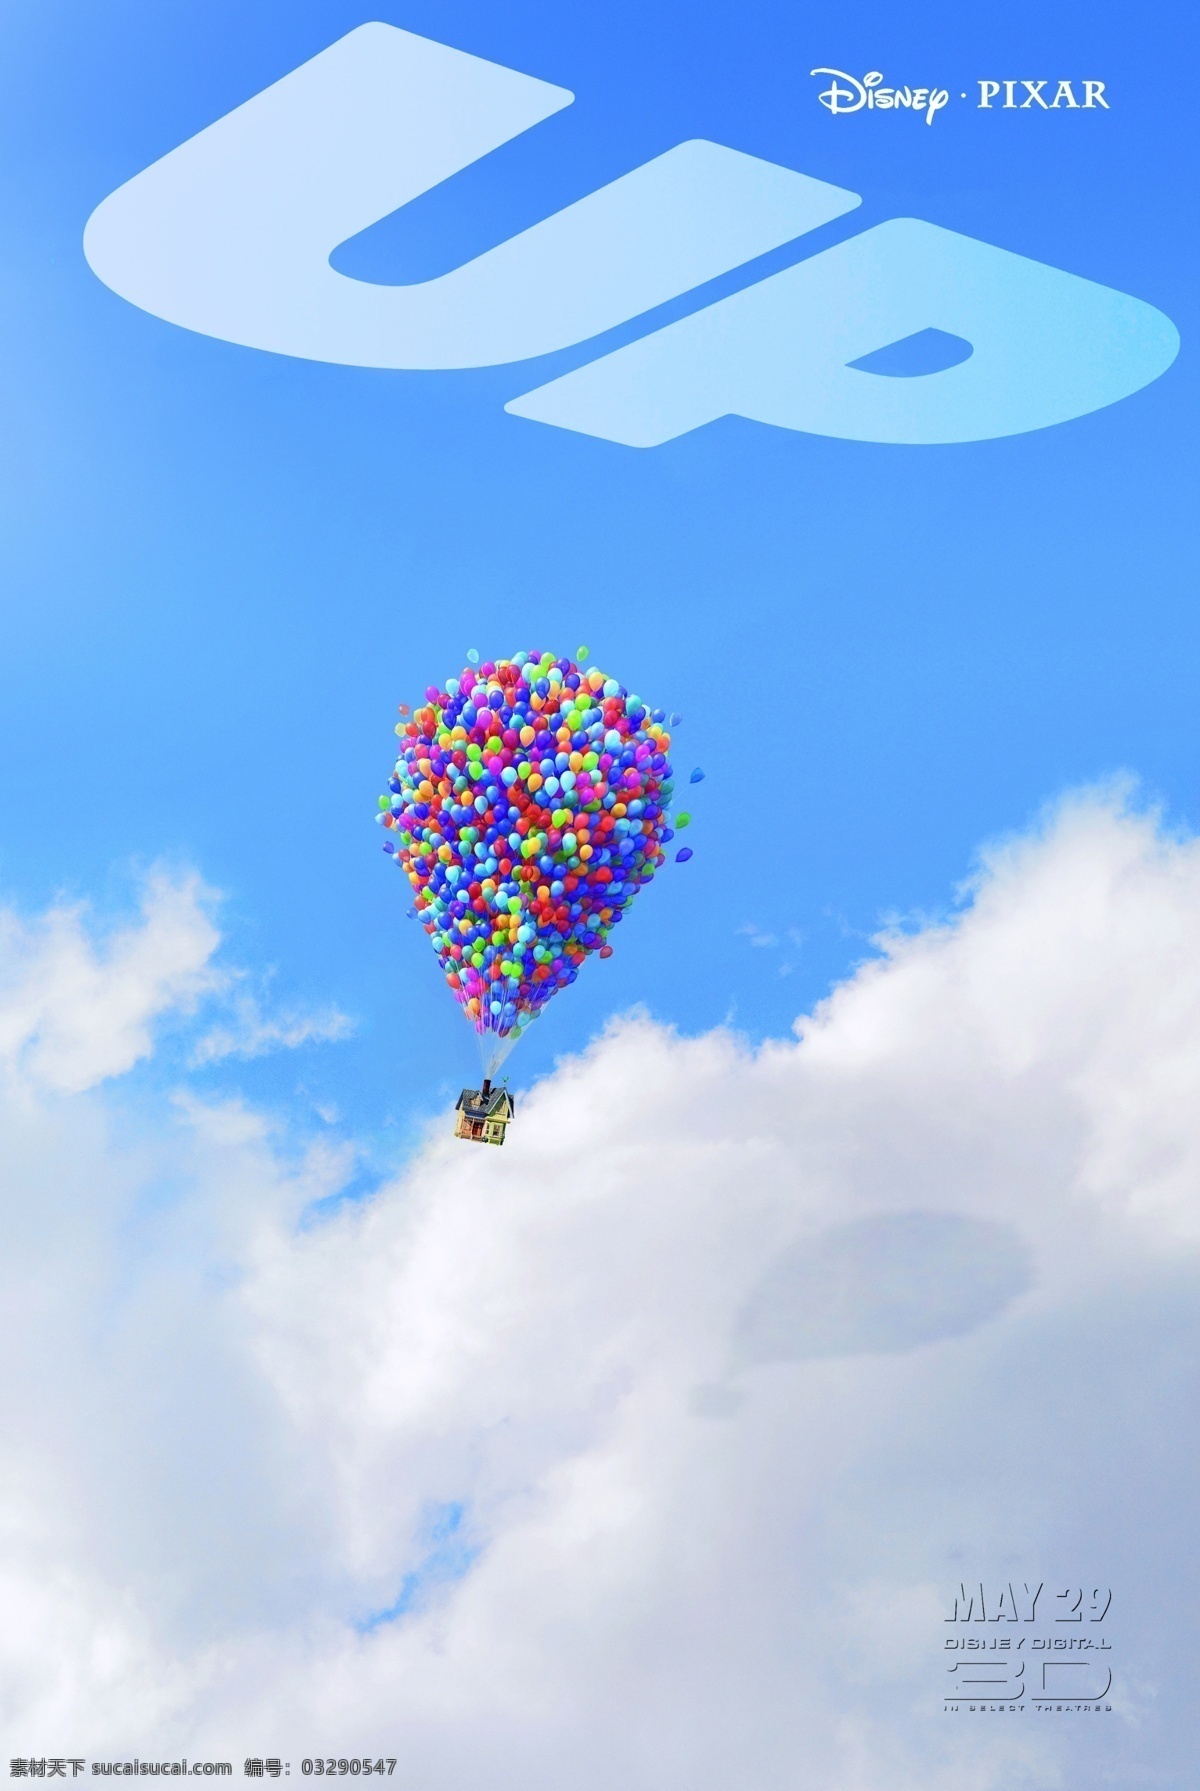 飞屋环游记 天外奇迹 卡尔 罗素 查尔斯 道格 大鸟 凯文 皮克斯 迪斯尼 剧照 动画电影 电影海报 pixar 动漫动画